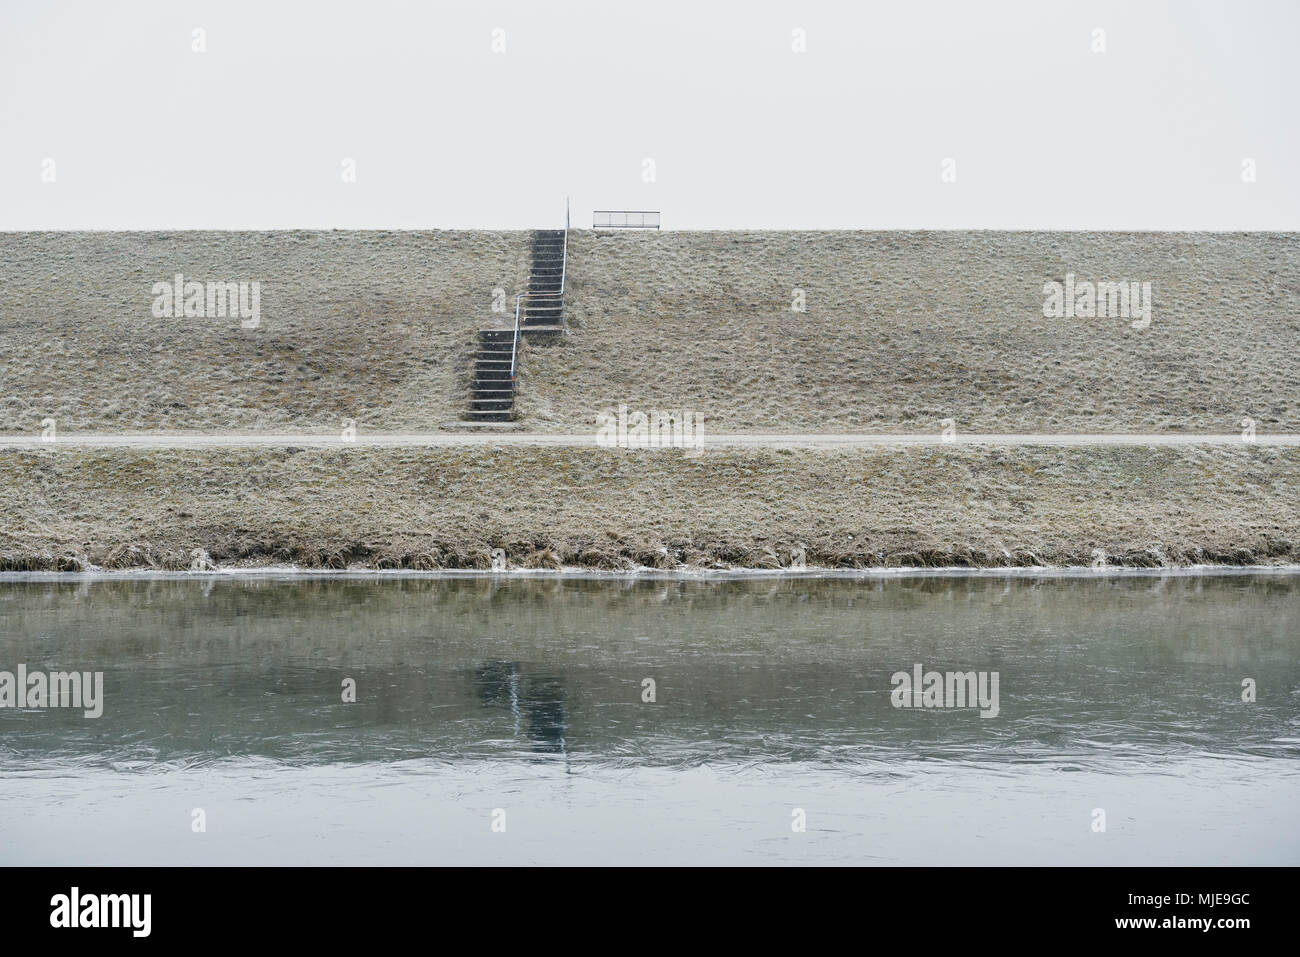 Banc en métal sur une digue avec des escaliers, de l'hiver, ciel gris blanc, eaux en premier plan Banque D'Images